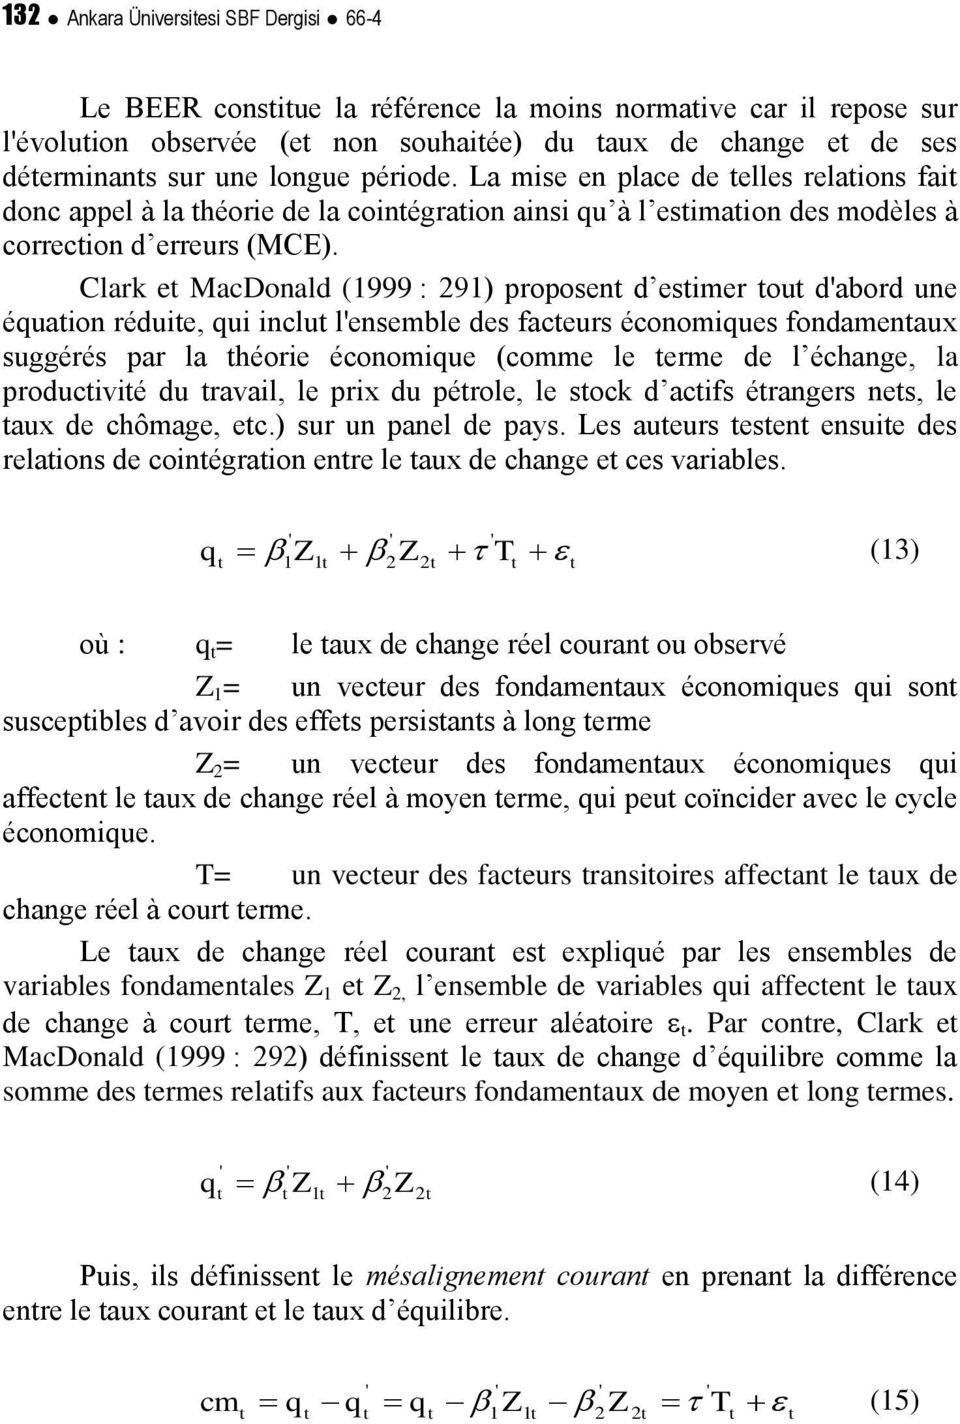 Clark e MacDonald (1999 : 291) proposen d esimer ou d'abord une équaion réduie, qui inclu l'ensemble des faceurs économiques fondamenaux suggérés par la héorie économique (comme le erme de l échange,